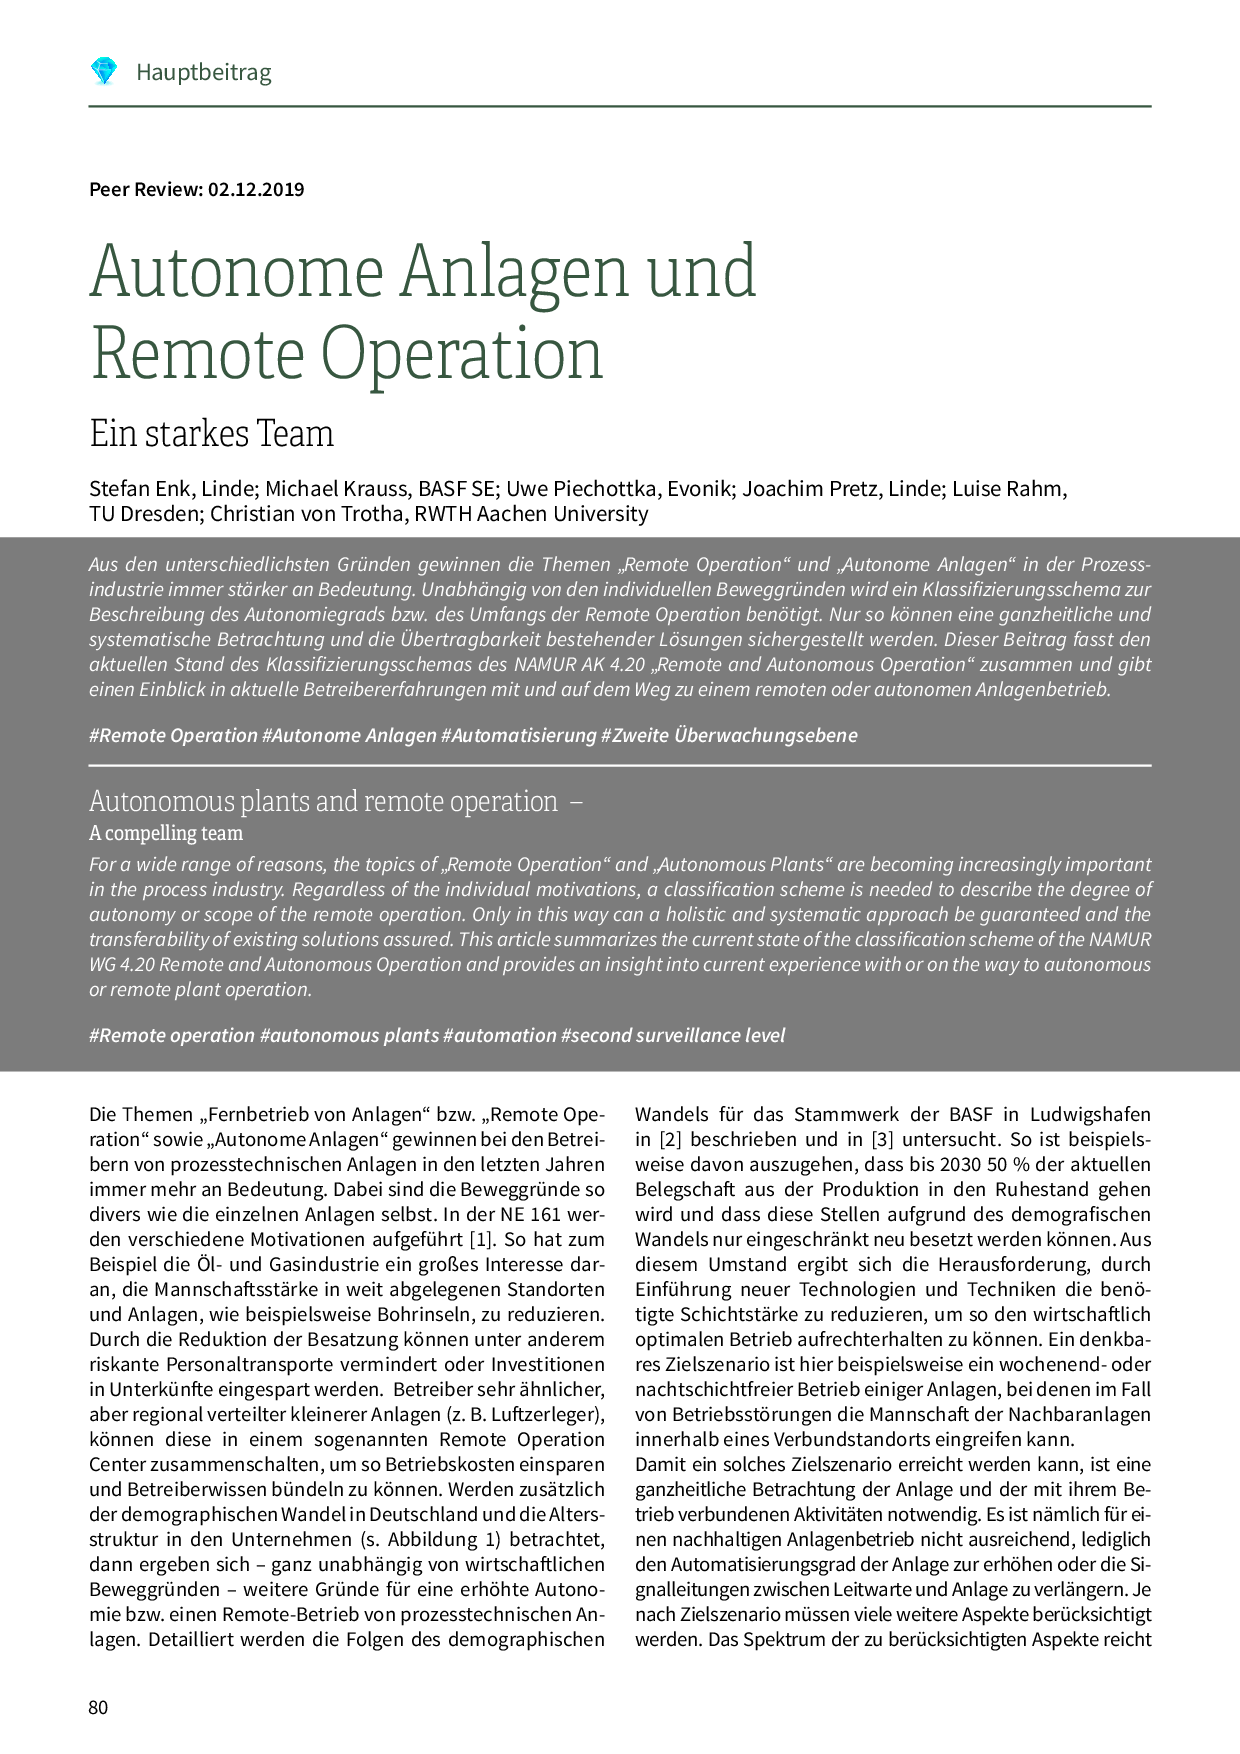 Autonome Anlagen und Remote Operation